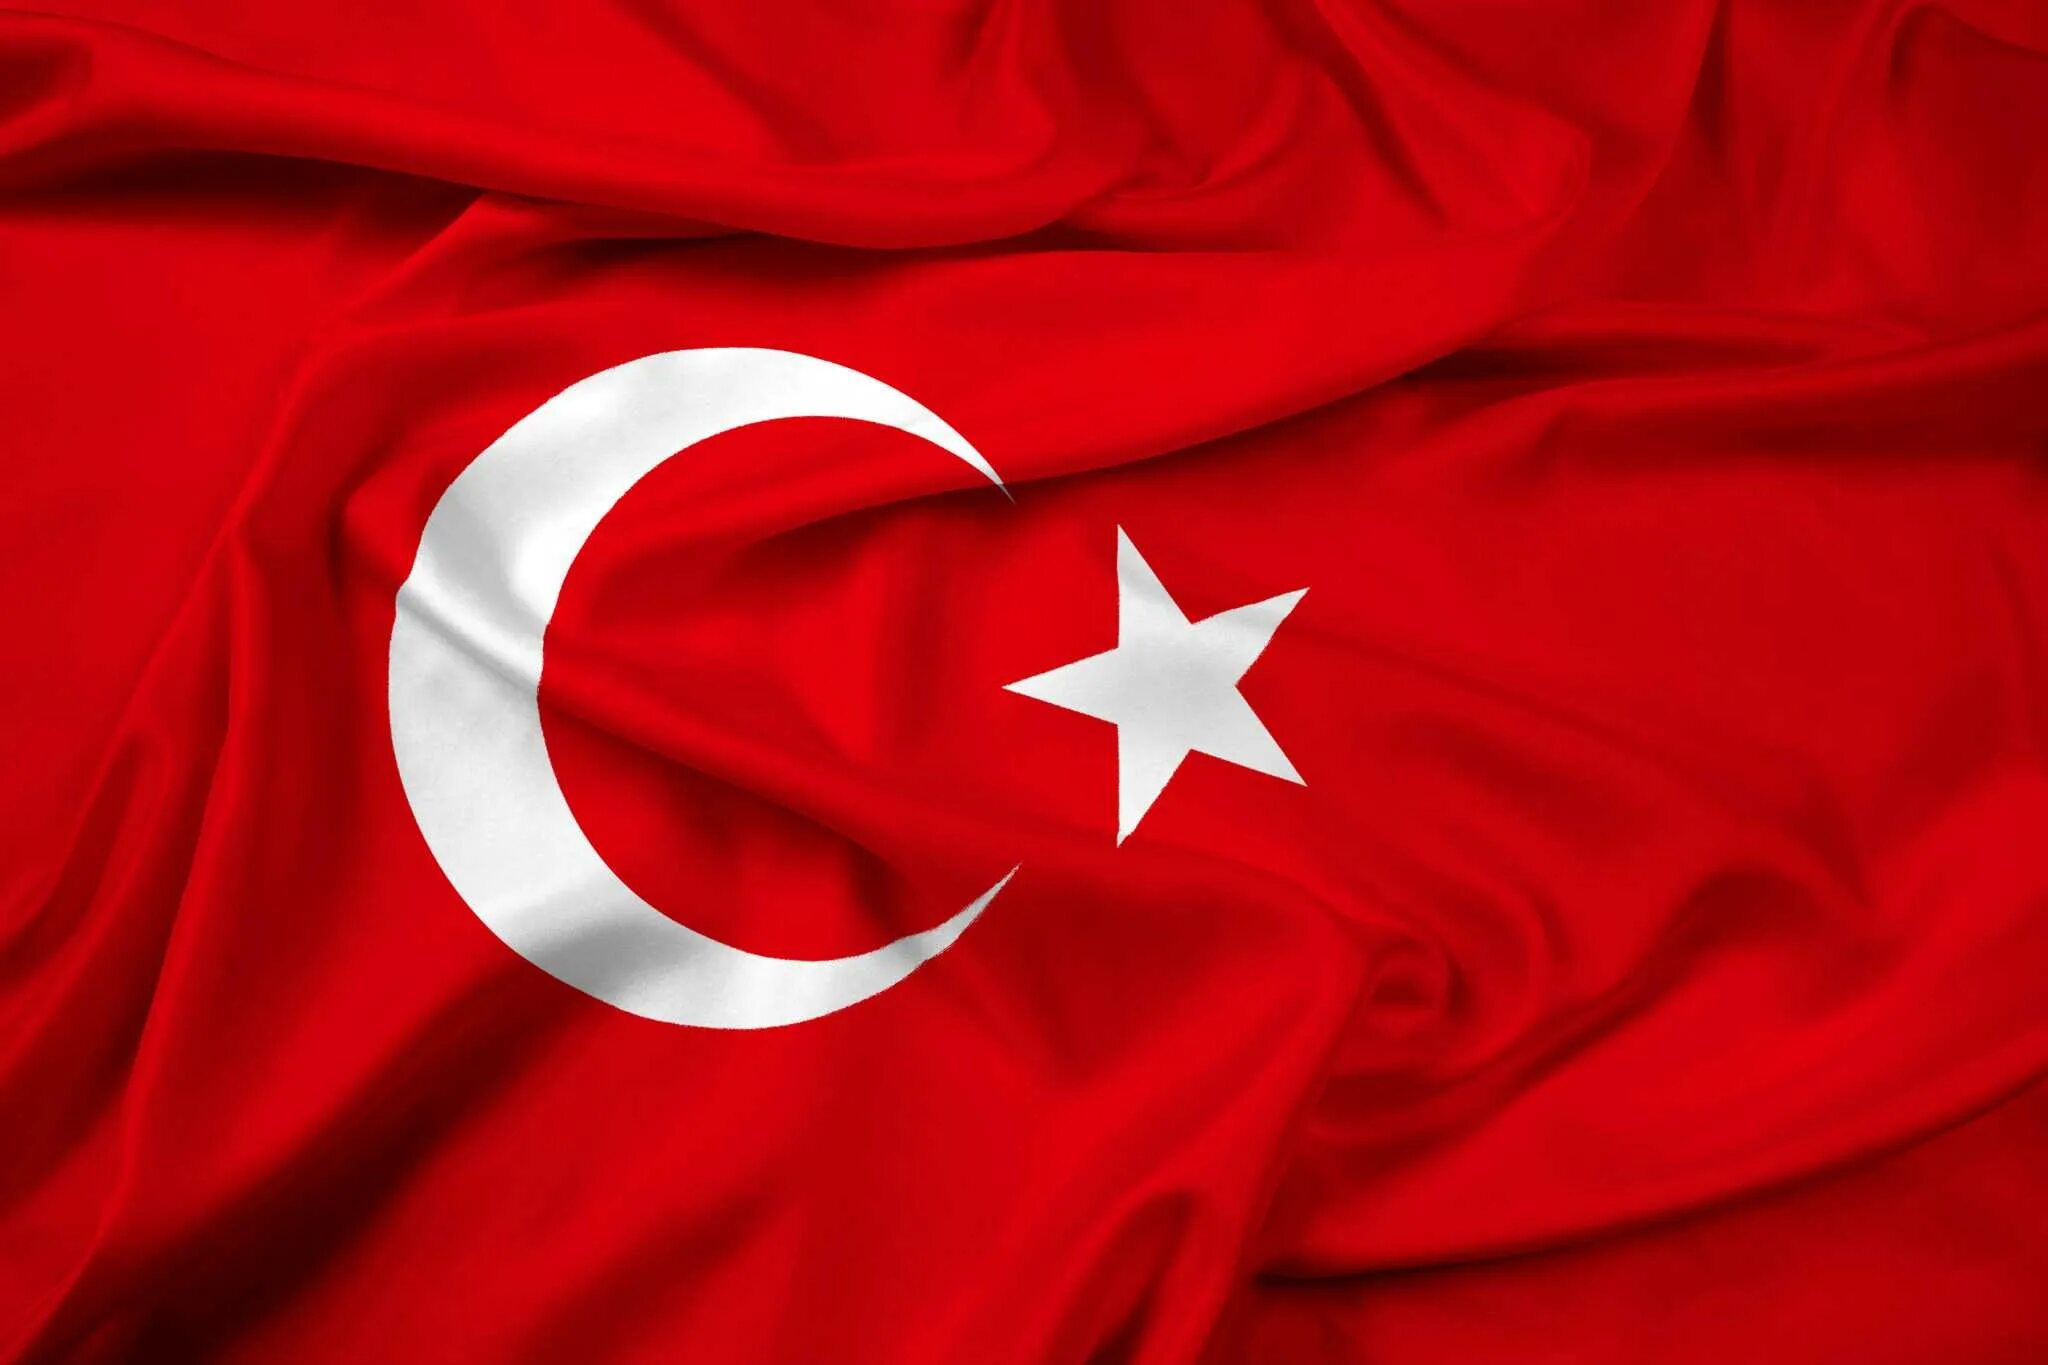 Турецкий флаг. Турецкое Знамя. Флаг Турции на черном фоне. Флаг Турции до 1844. Сколько звезд на флаге турции